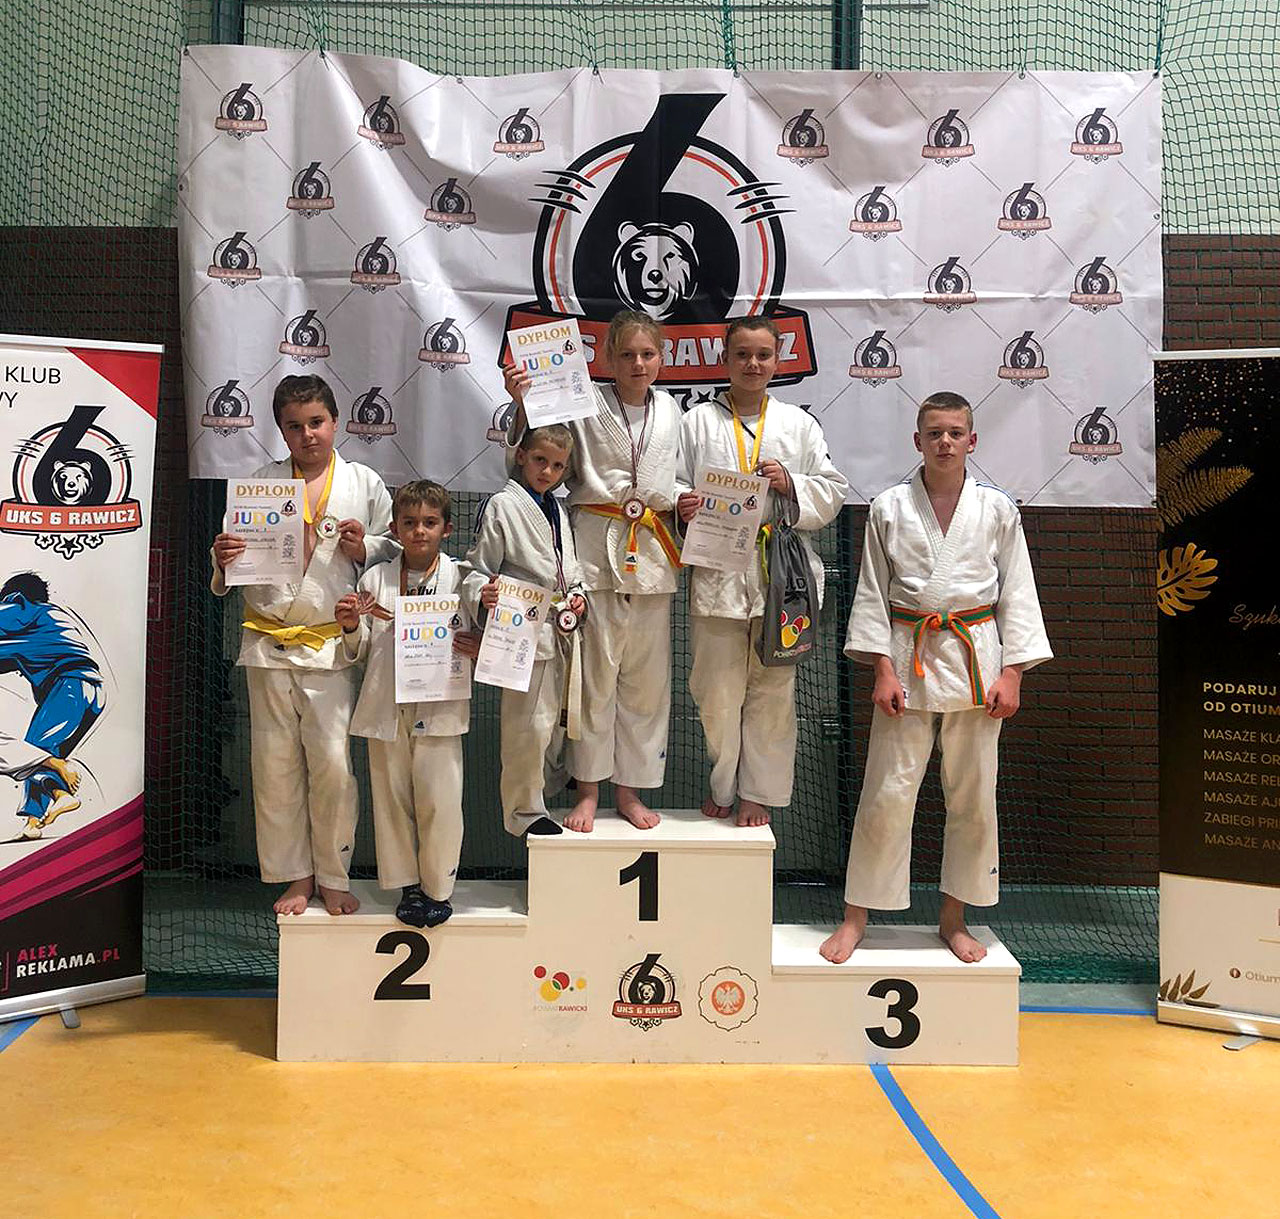 Wrócili z pięcioma medalami. Tuliszkowska sekcja judo po turnieju w Rawiczu - fot.: UKS Judo Tuliszków